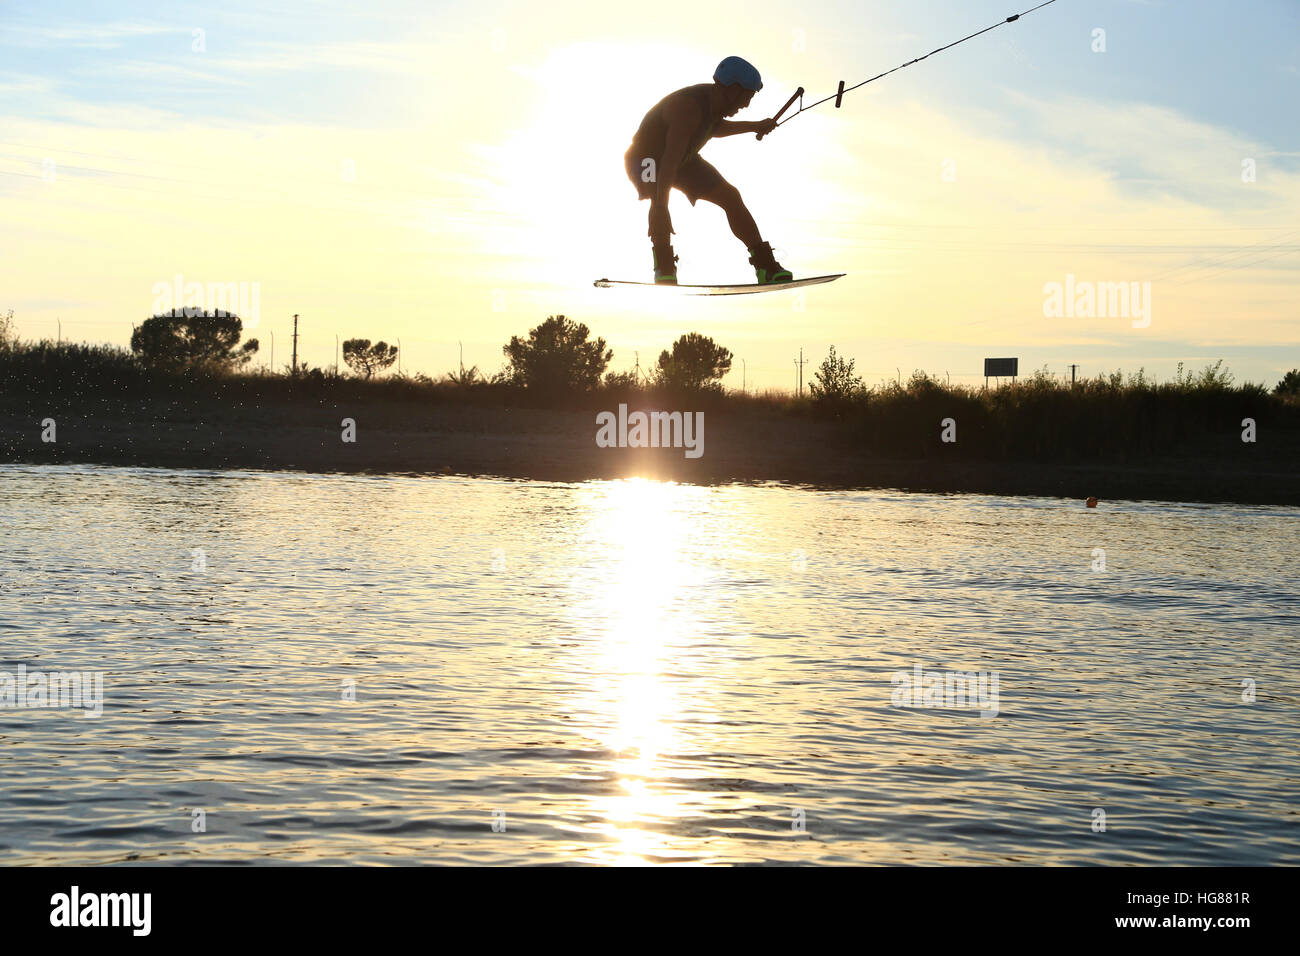 Man kiteboarding over lake against sky Stock Photo